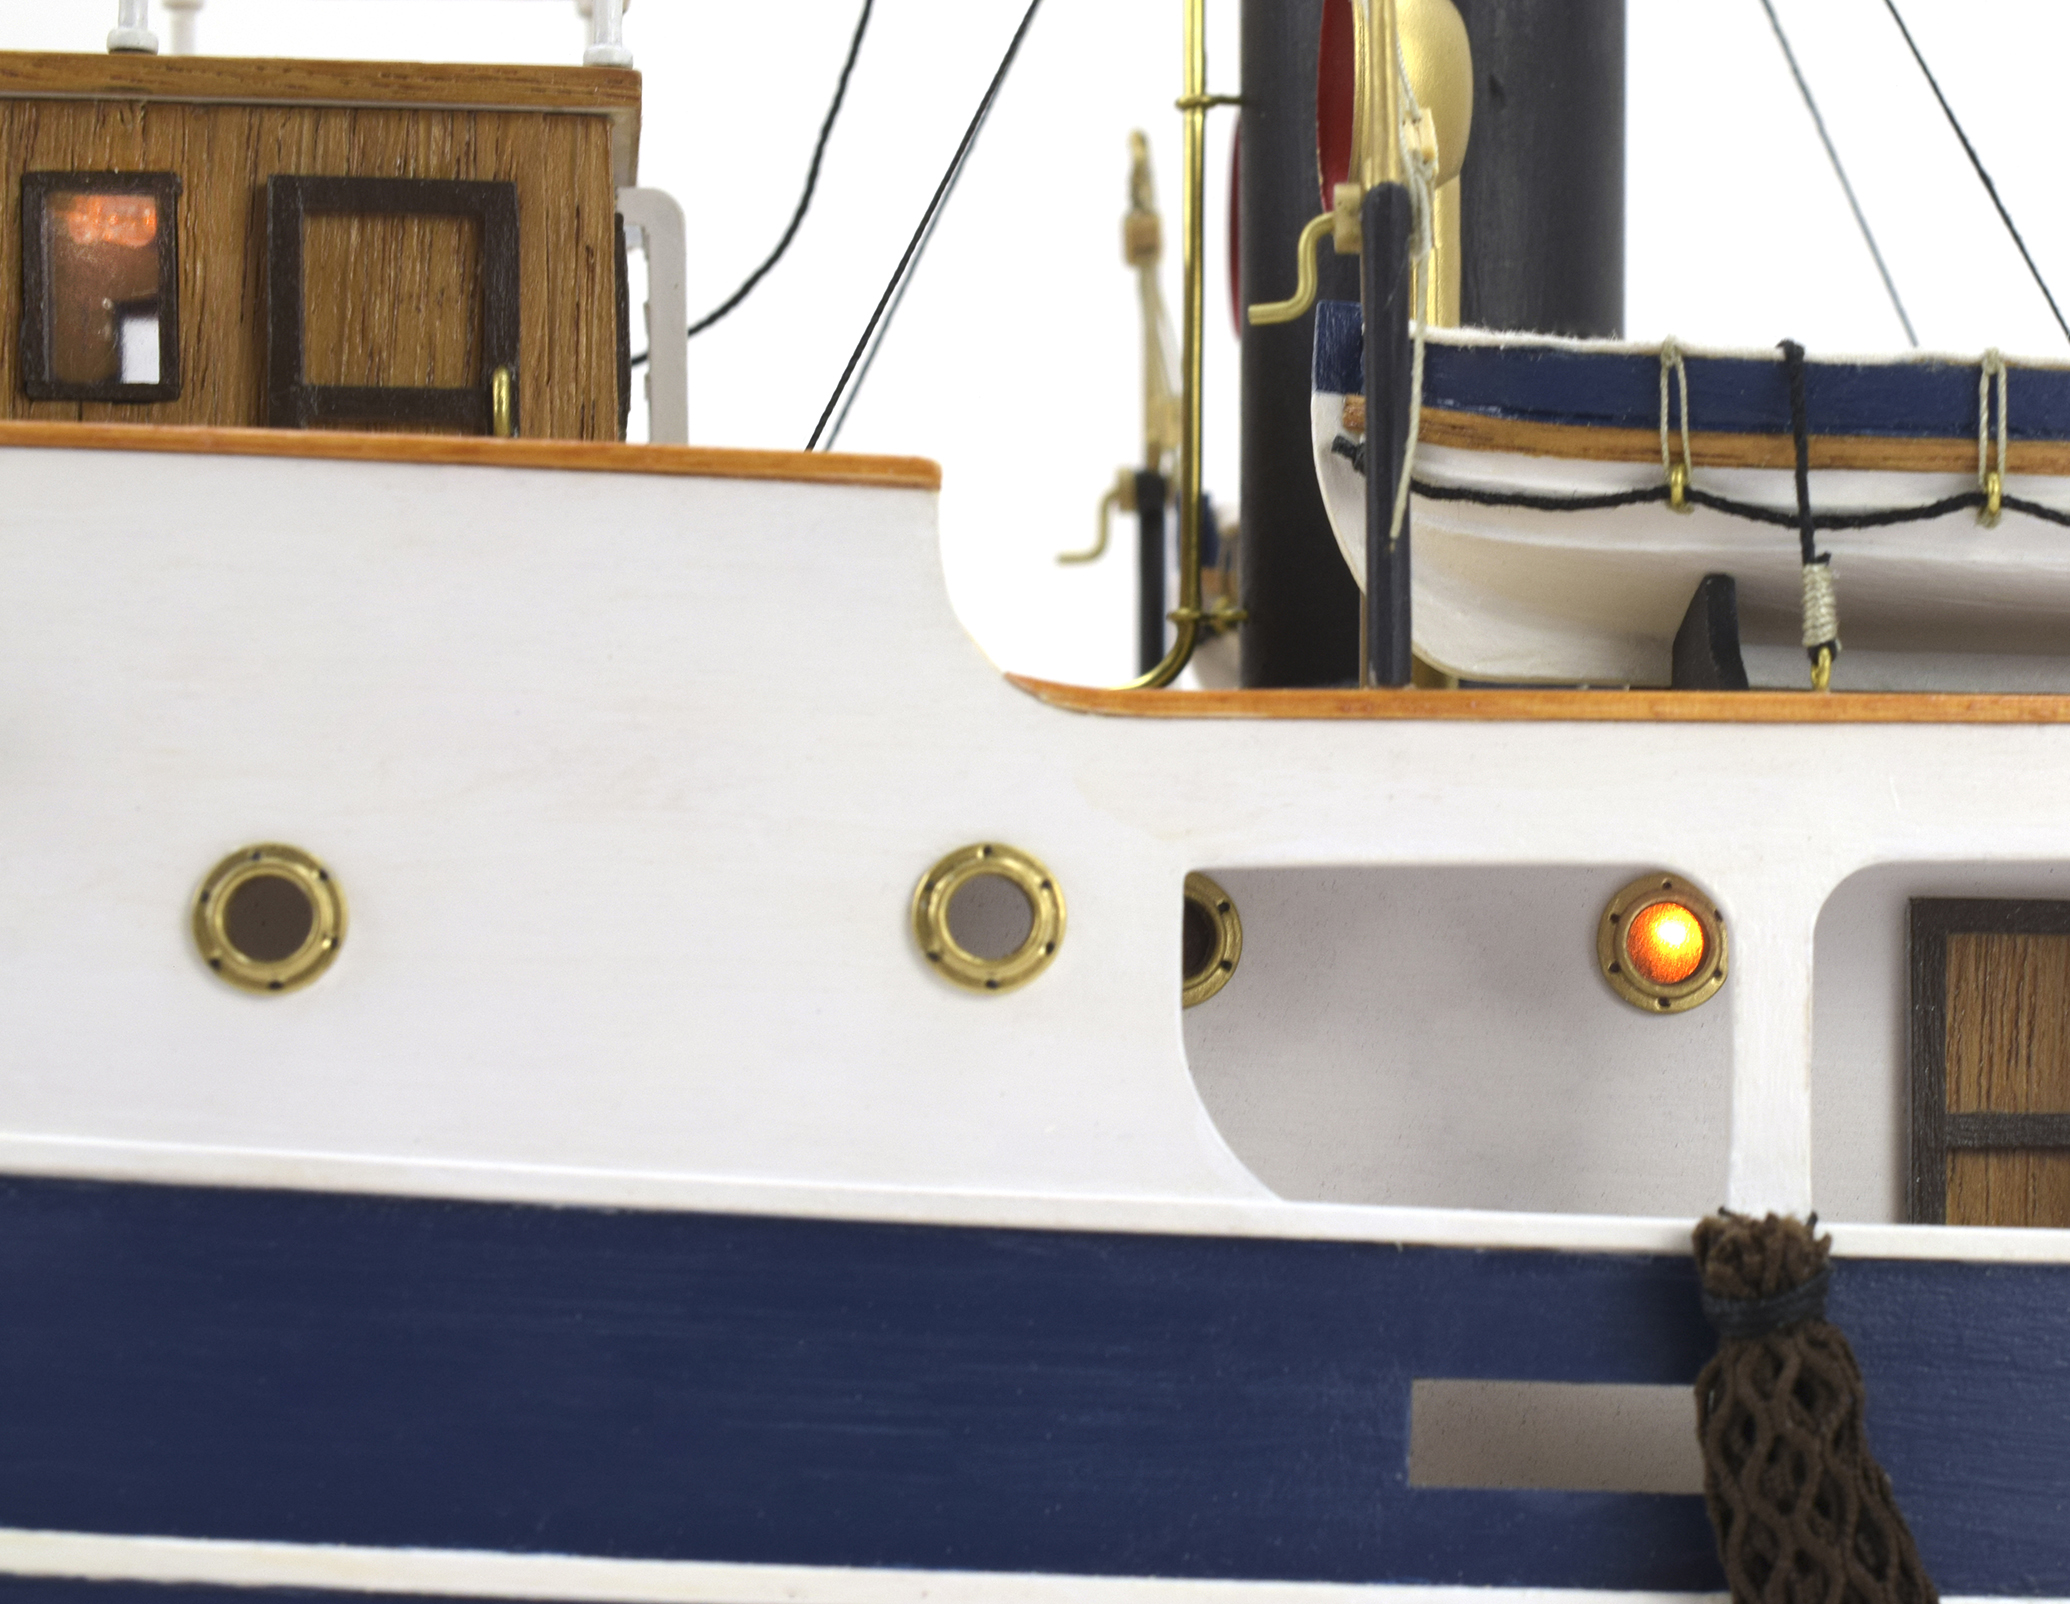 R/C Tugboat Model Sanson (20415) by Artesanía Latina.